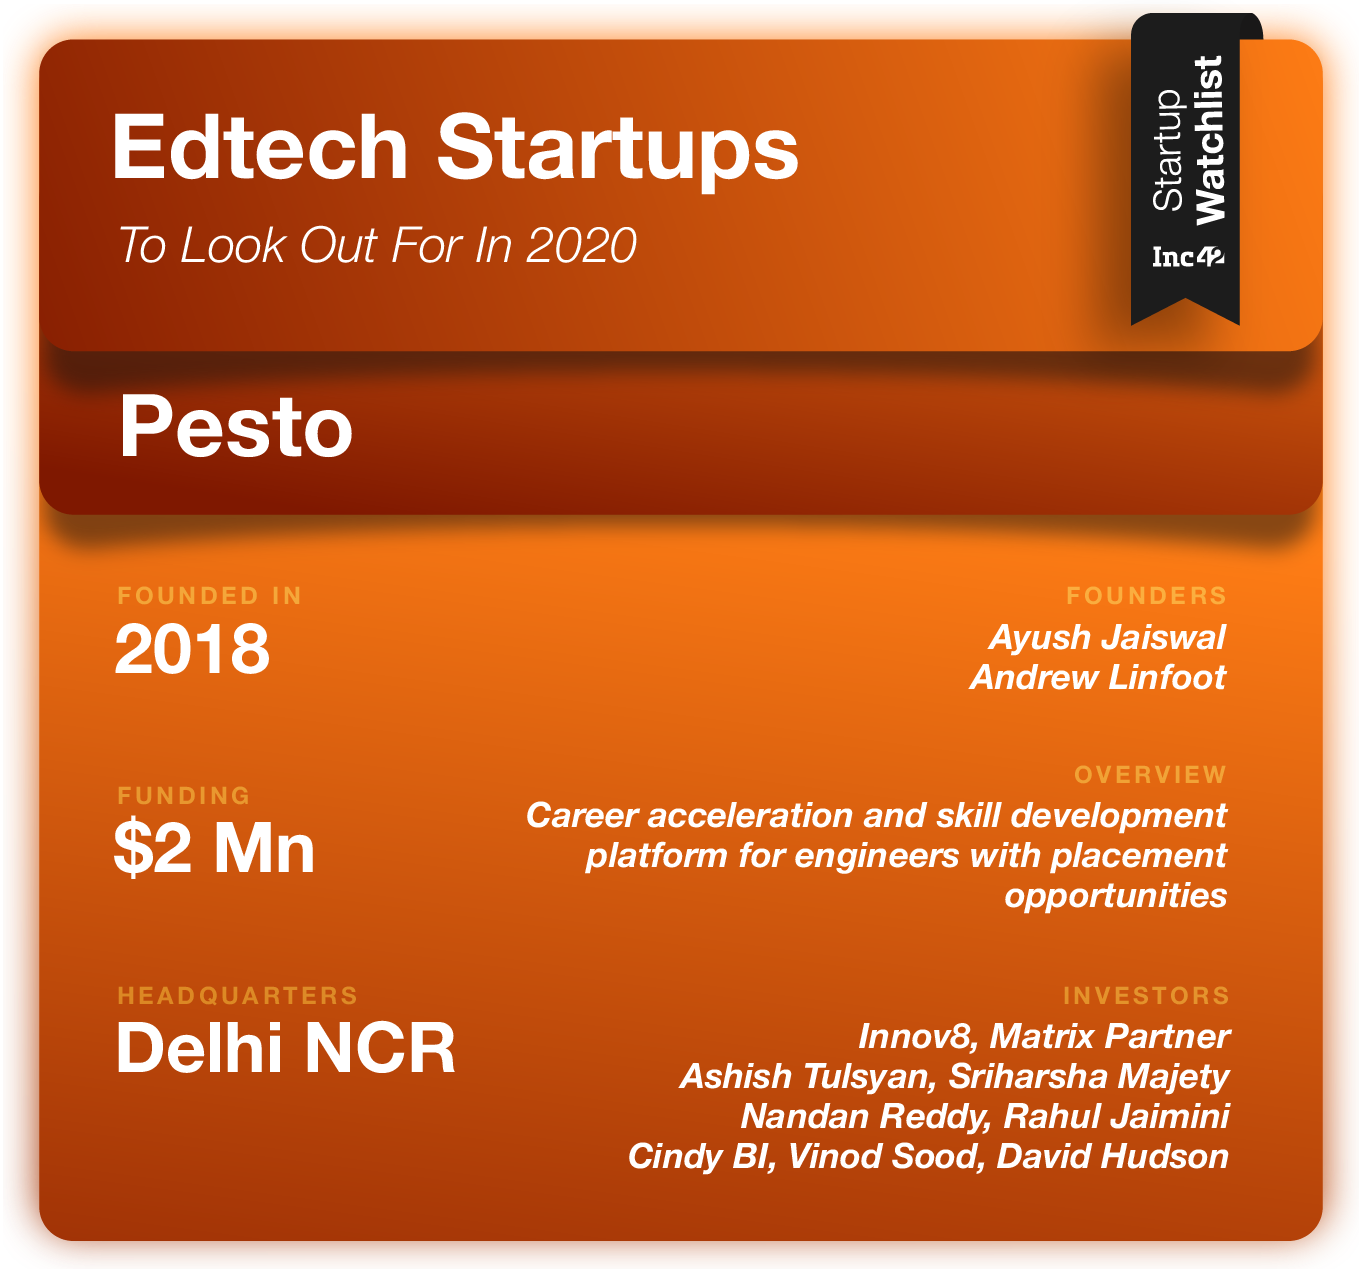 Edtech Startups 2020 Pesto